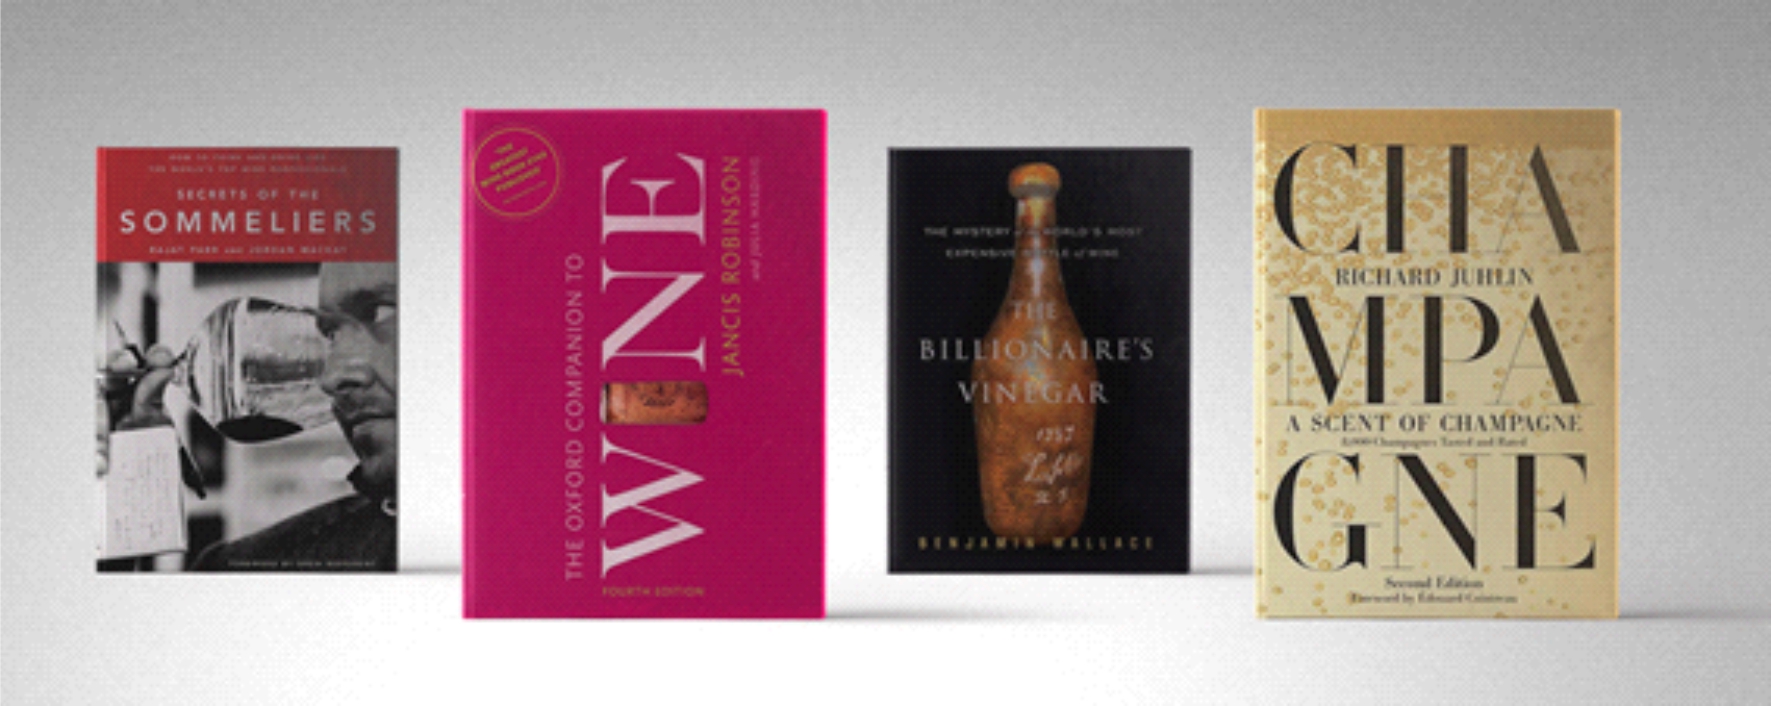 4 livros para os amantes de Vinhos